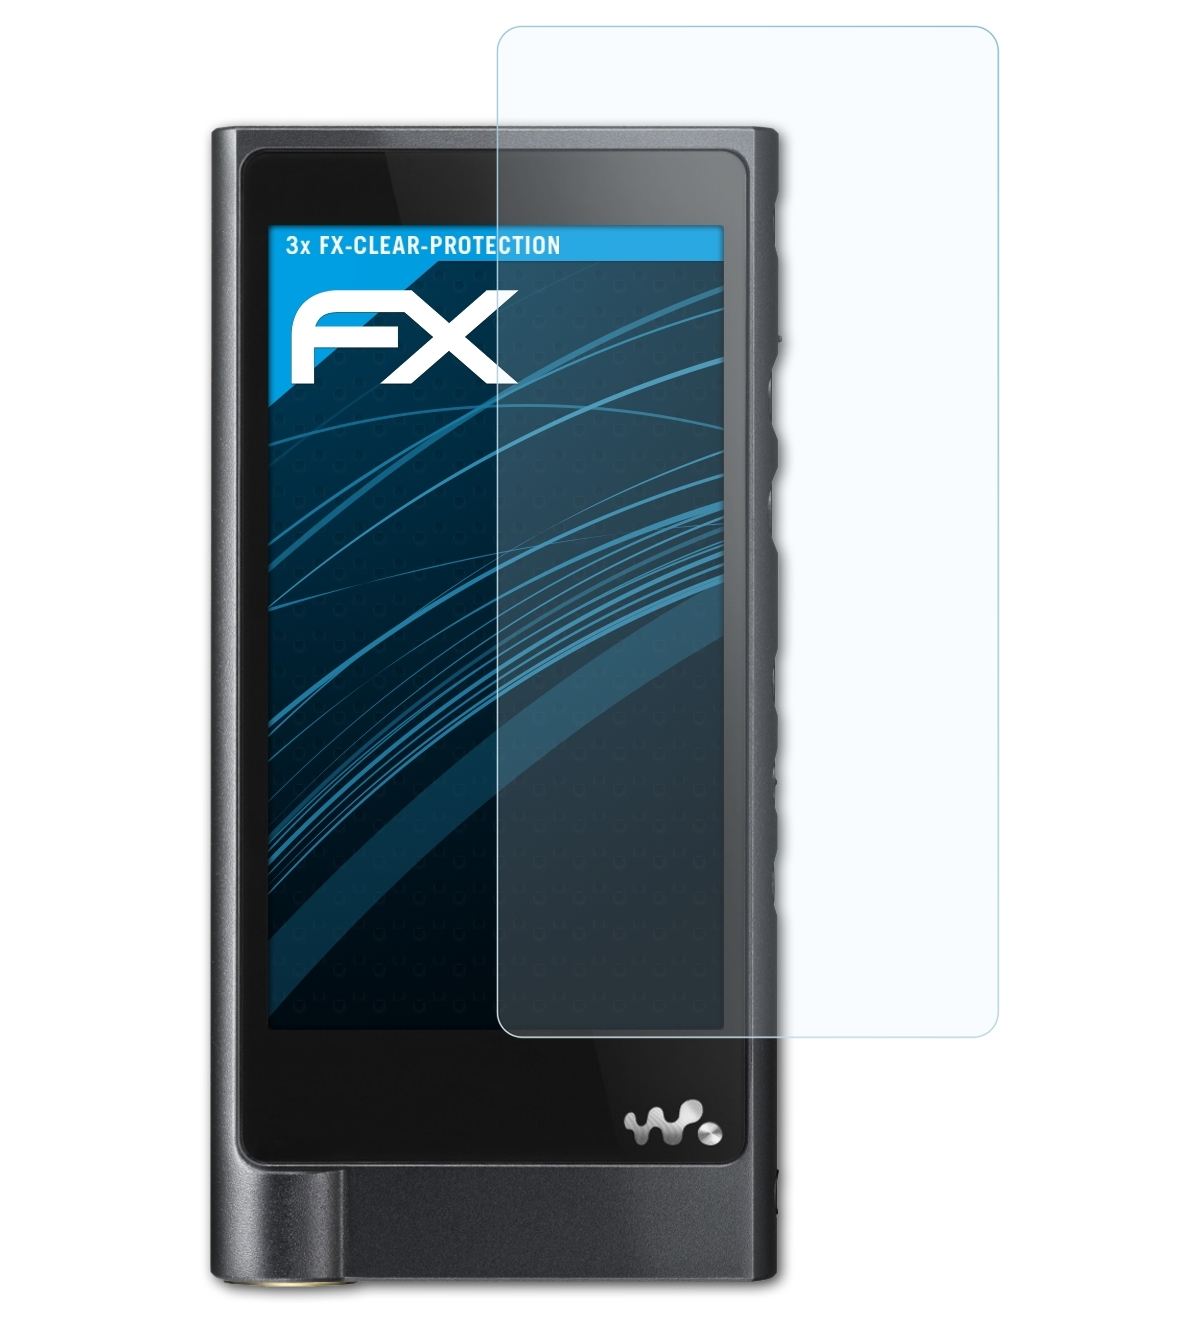 Walkman NW-ZX2) Displayschutz(für ATFOLIX 3x Sony FX-Clear